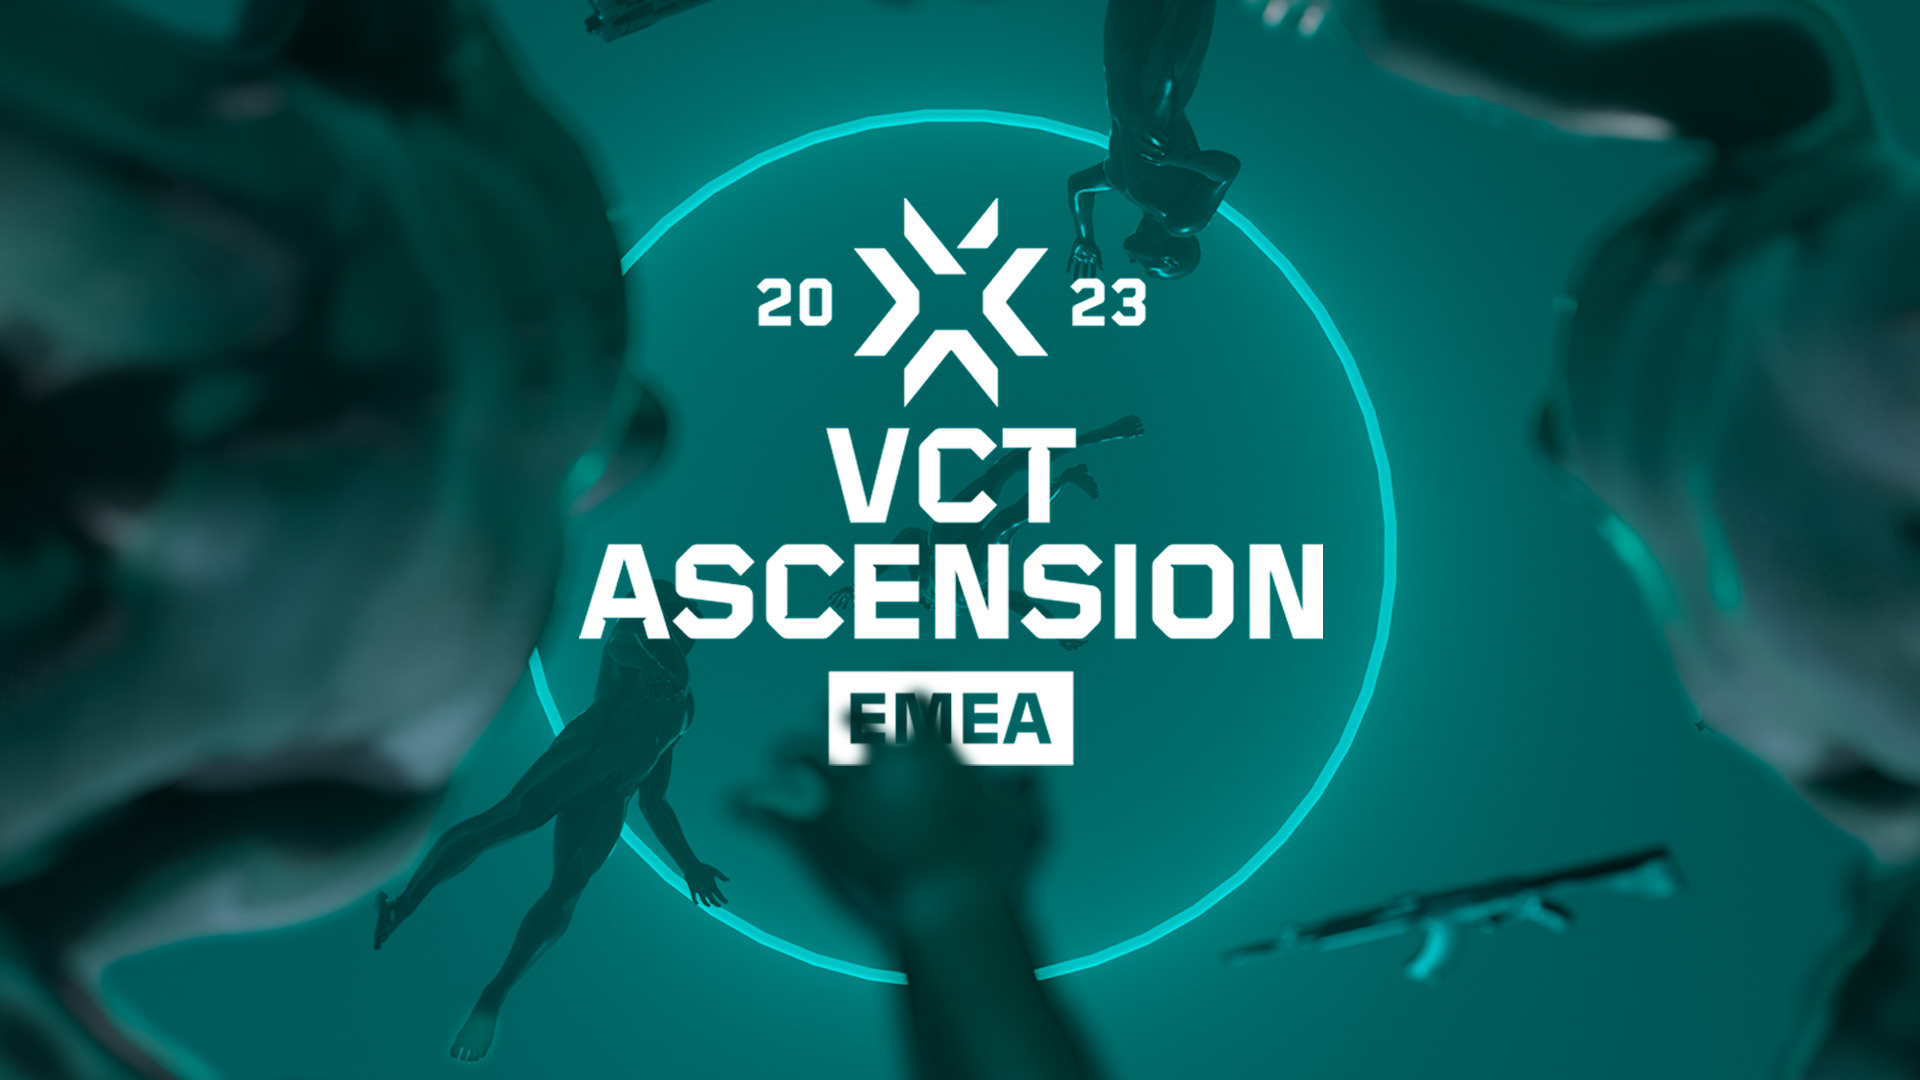 VCT ASCENSION EMEA 2023 PROMO